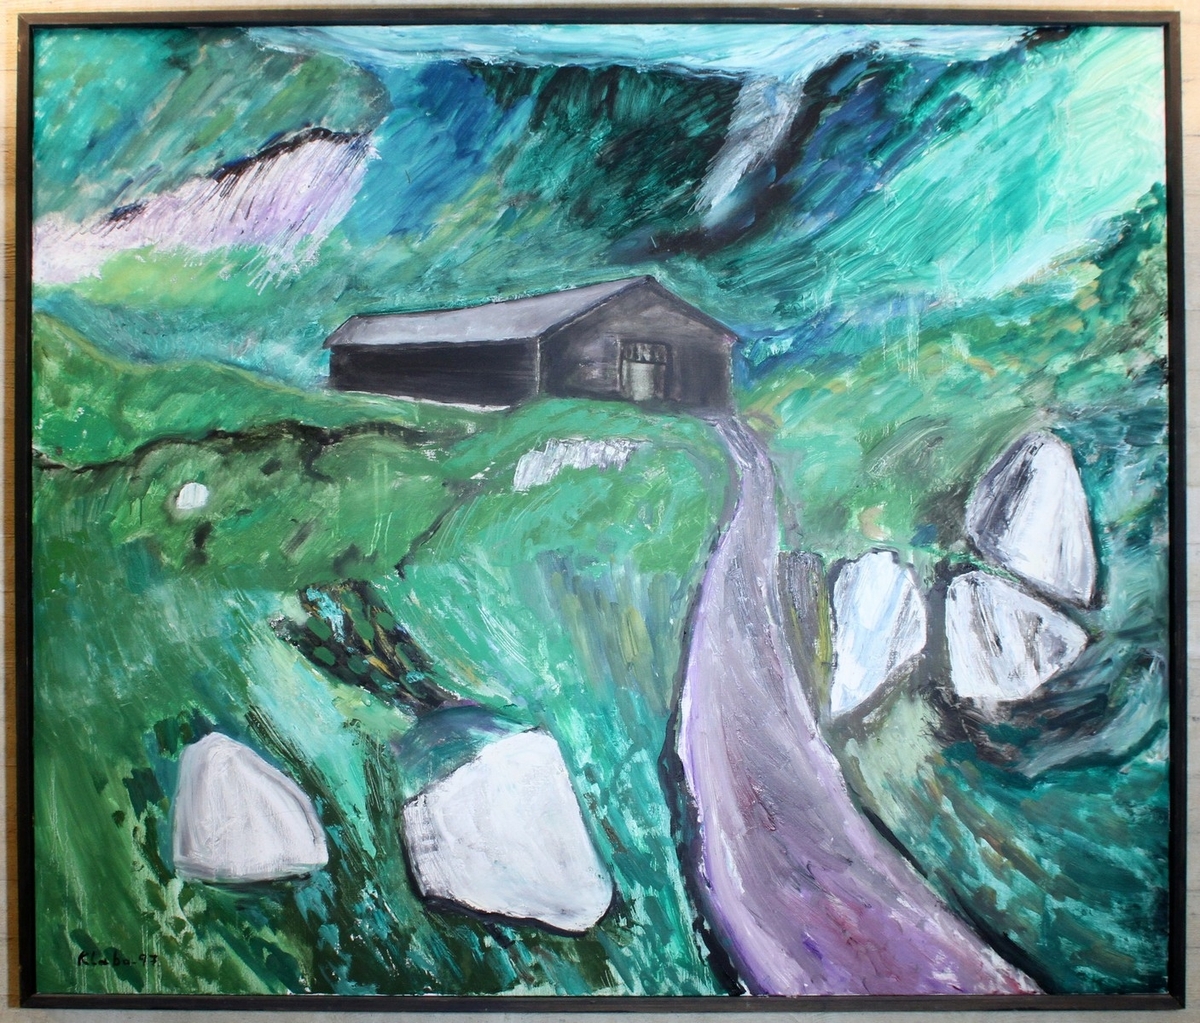 Måleri av Raymond Klæbo (1921-1998), som vart gjeve i gåve frå Volda kommune i høve opninga av Ivar Aasen-tunet 22. juni 2000.